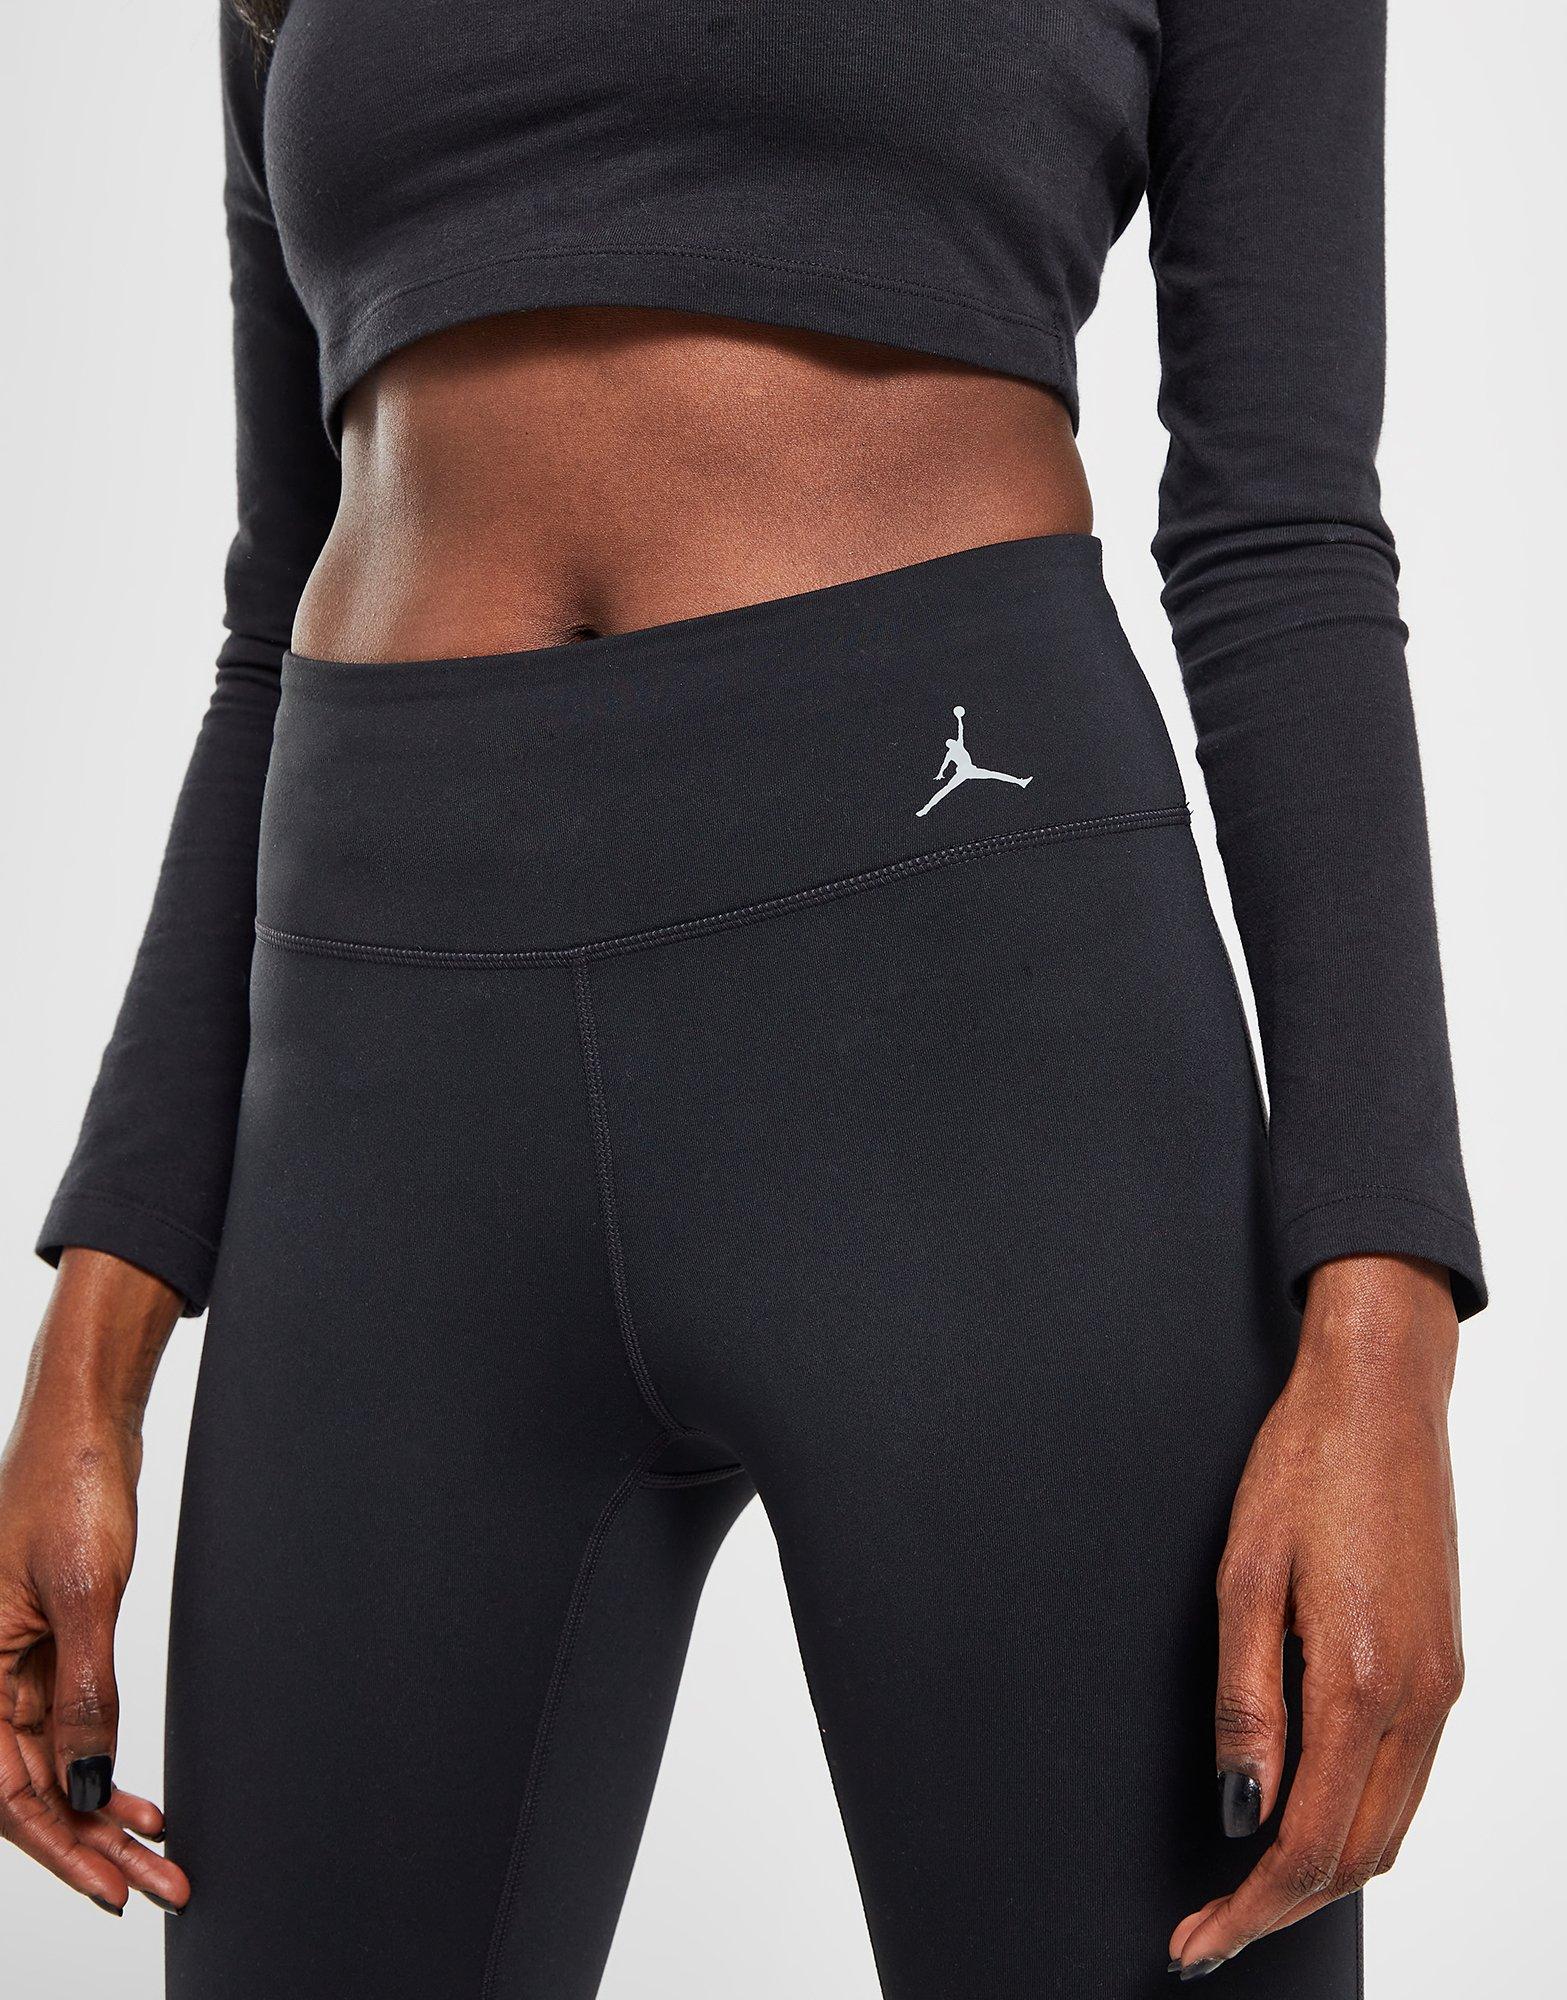 Nike Air Jordan Leggings In Black ASOS, 51% OFF